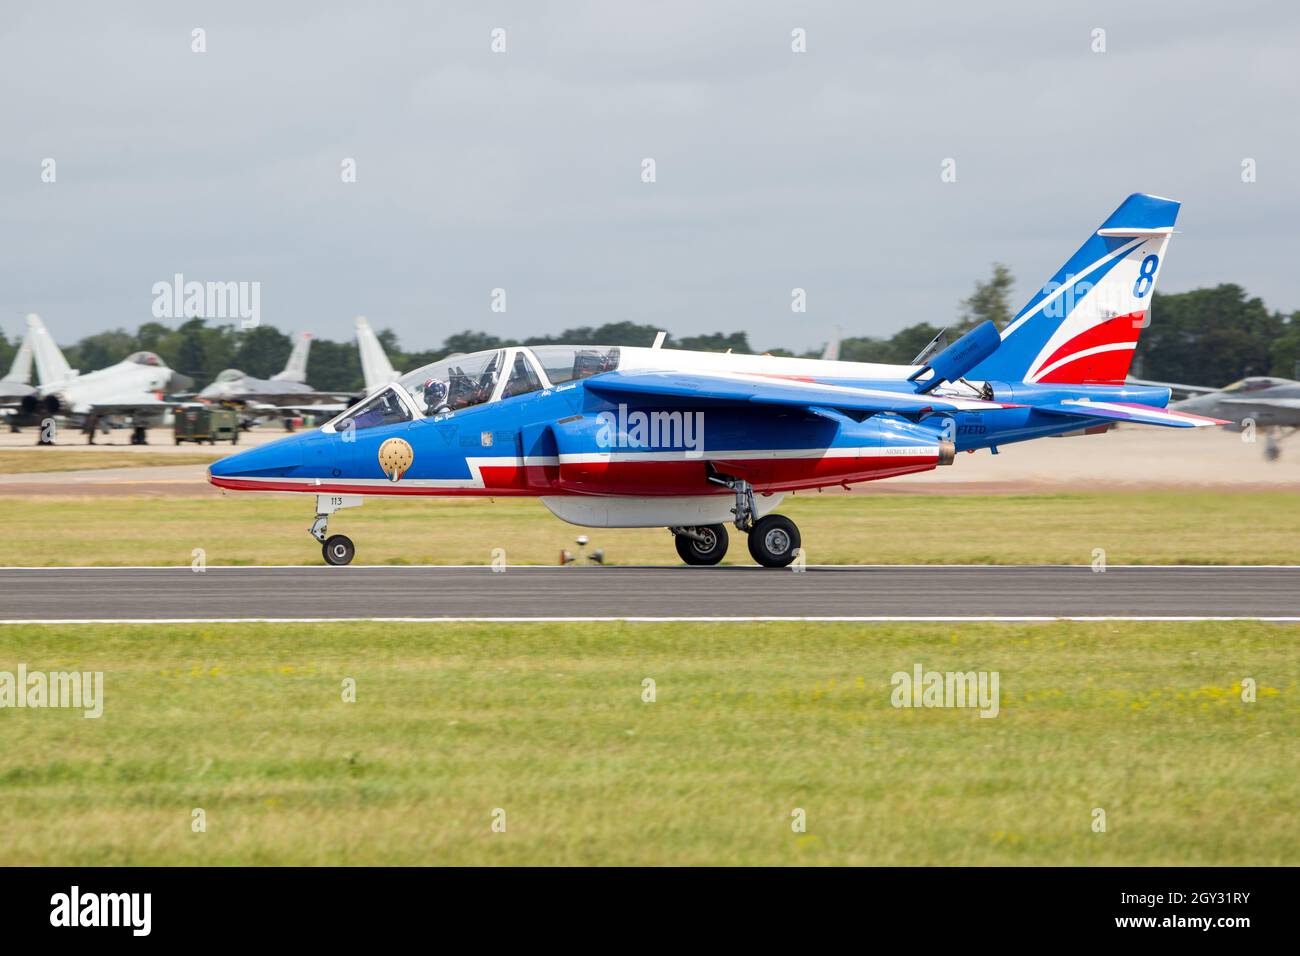 Patrouille de France Alpha Jet Trainer RIAT Fairford Airshow Stock Photo